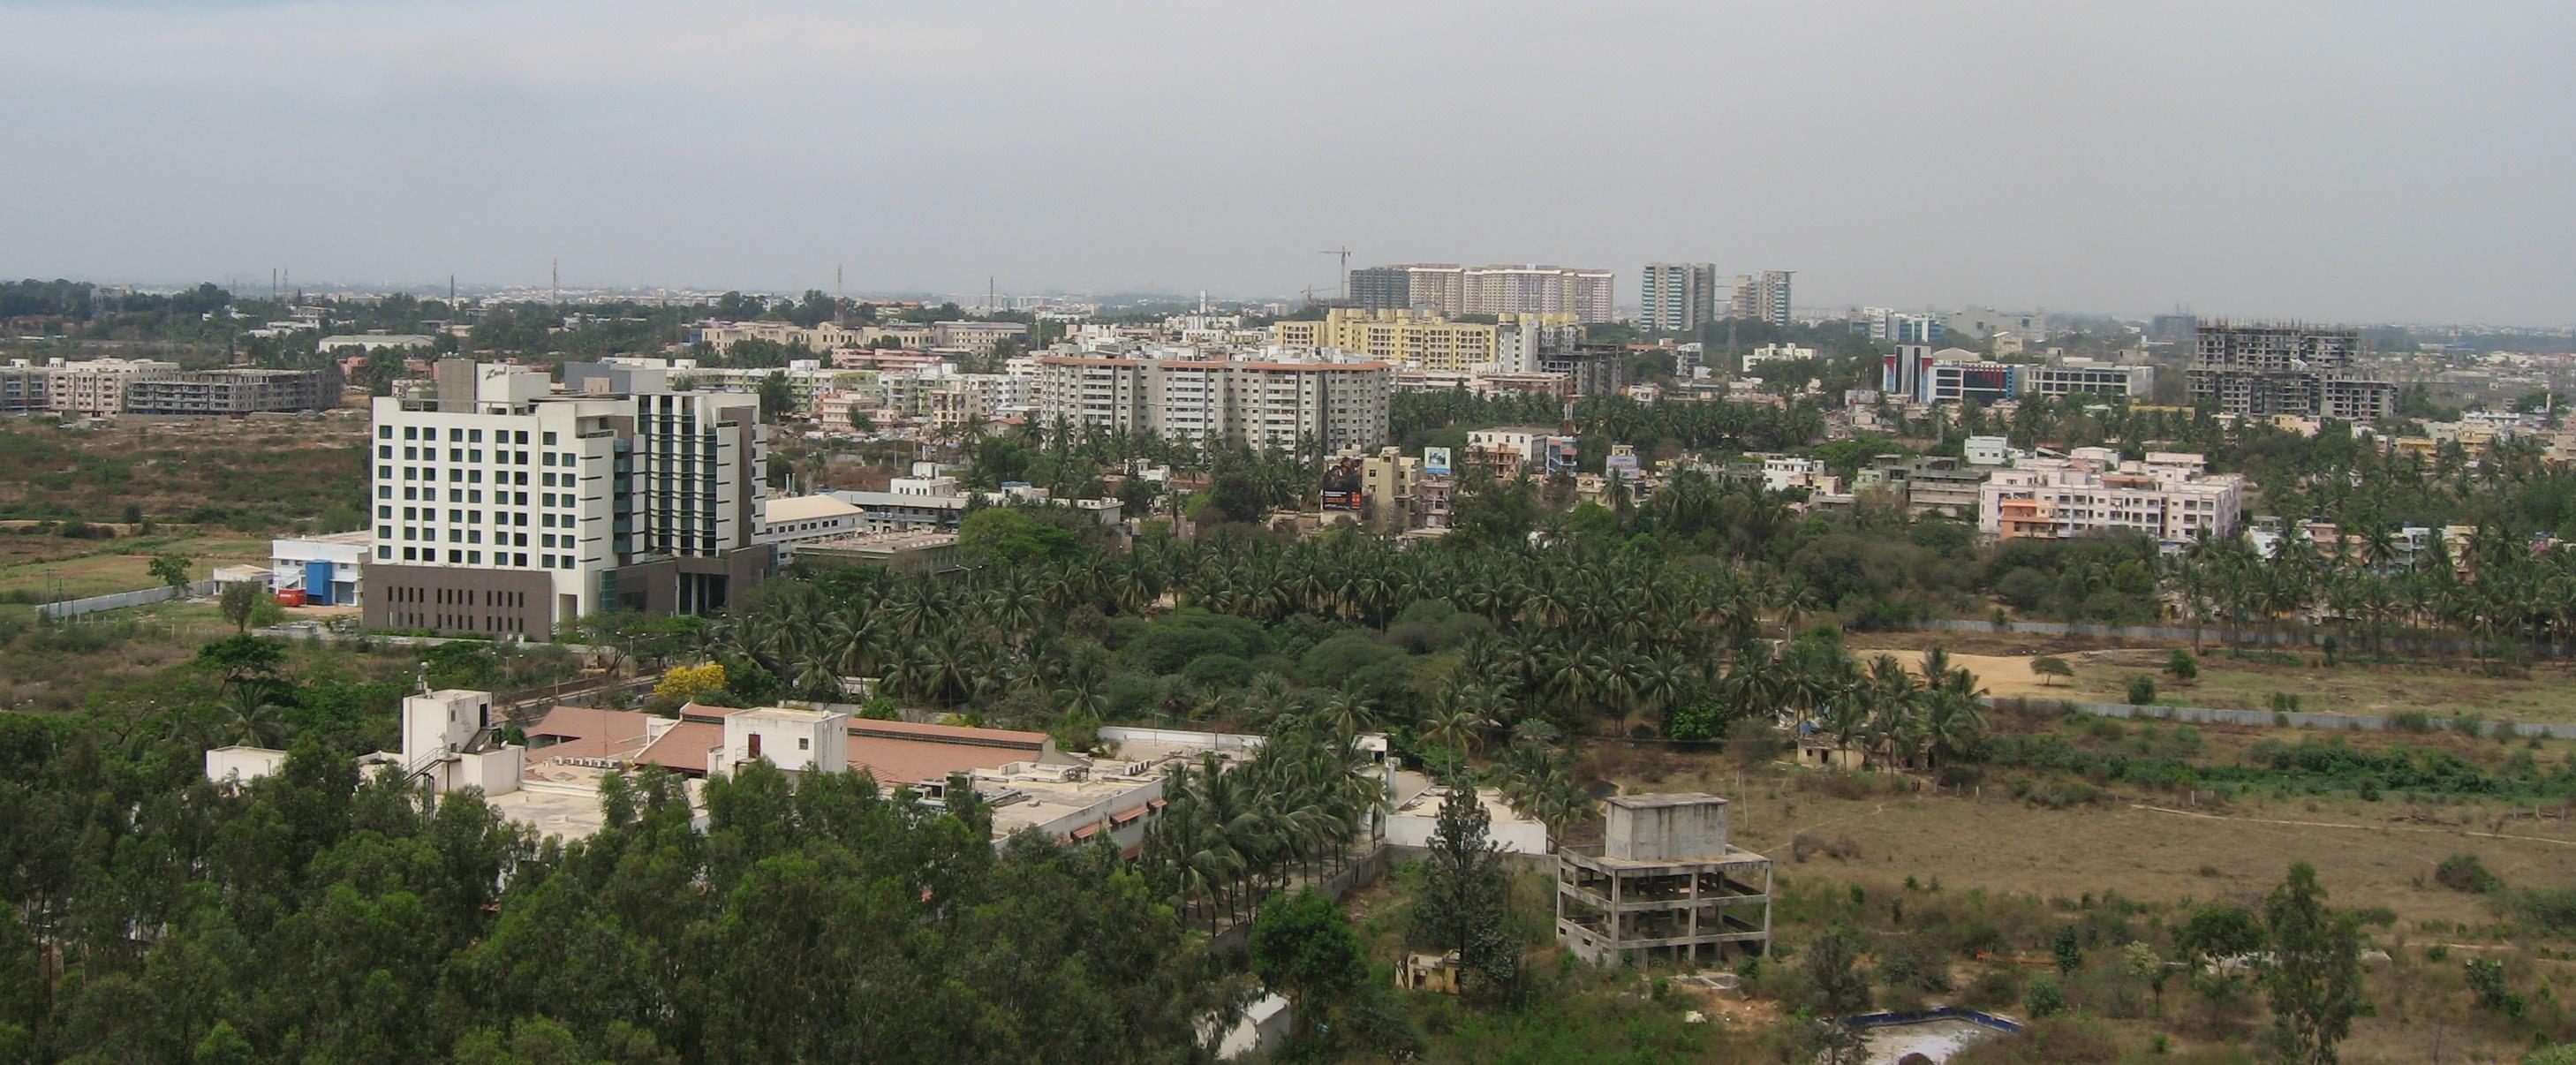 Mondes urbains indiens / <i>Prestige Shantiniketan</i> : la promotion d’un grand projet immobilier dans la périphérie de Bangalore